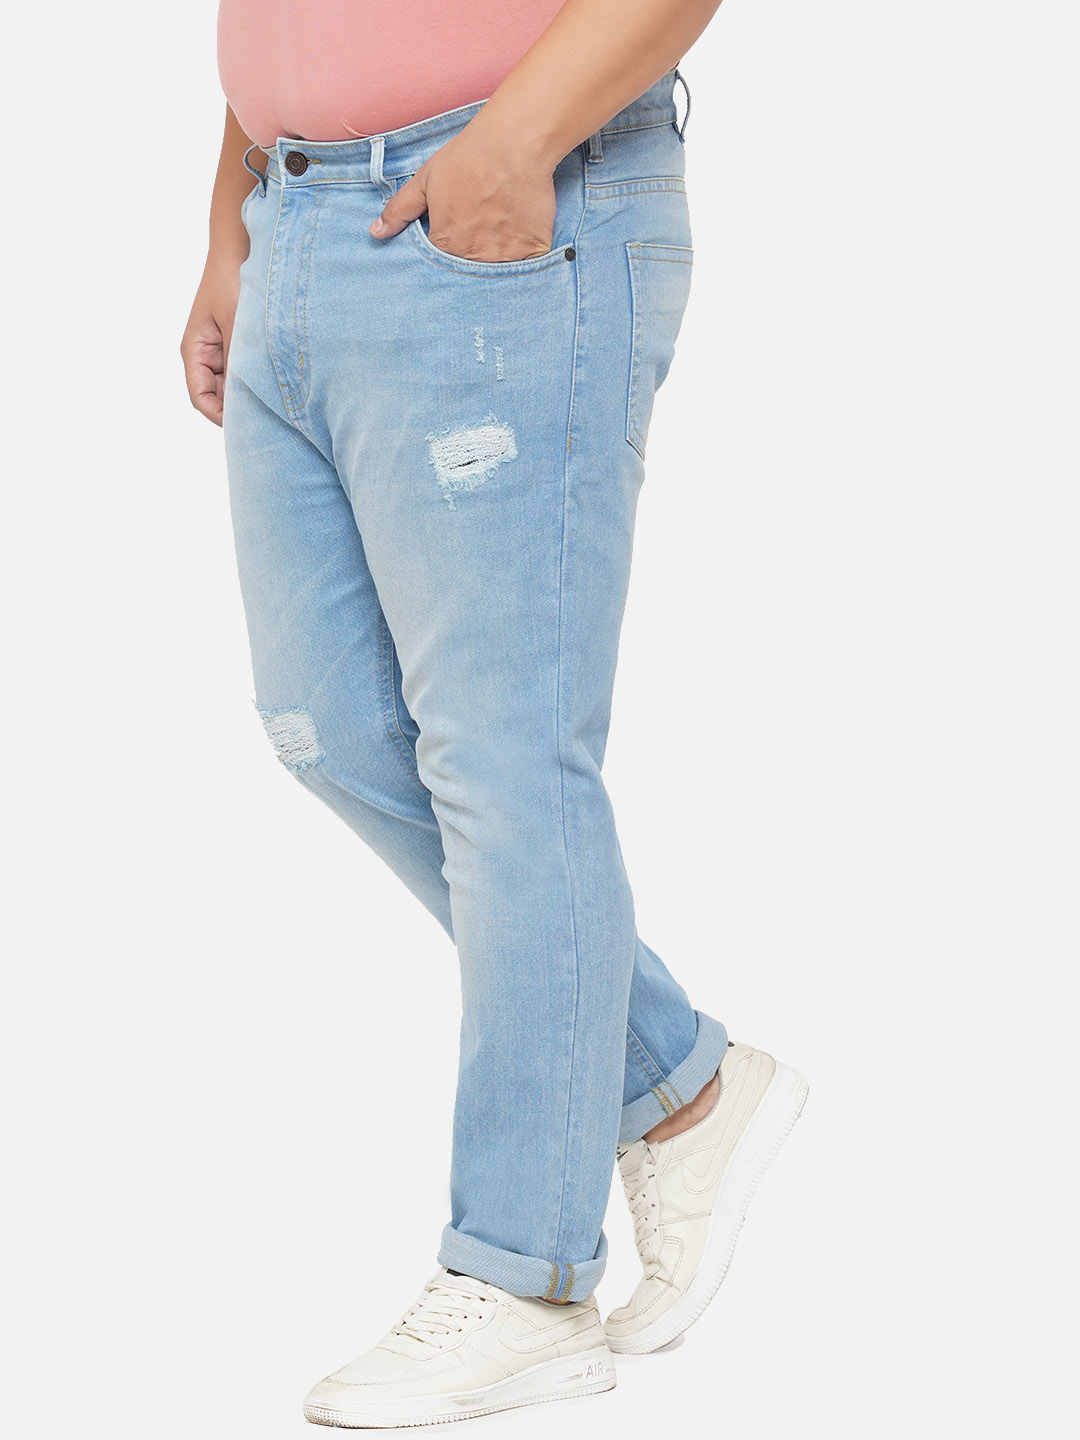 bottomwear/jeans/EJPJ25070/ejpj25070-4.jpg